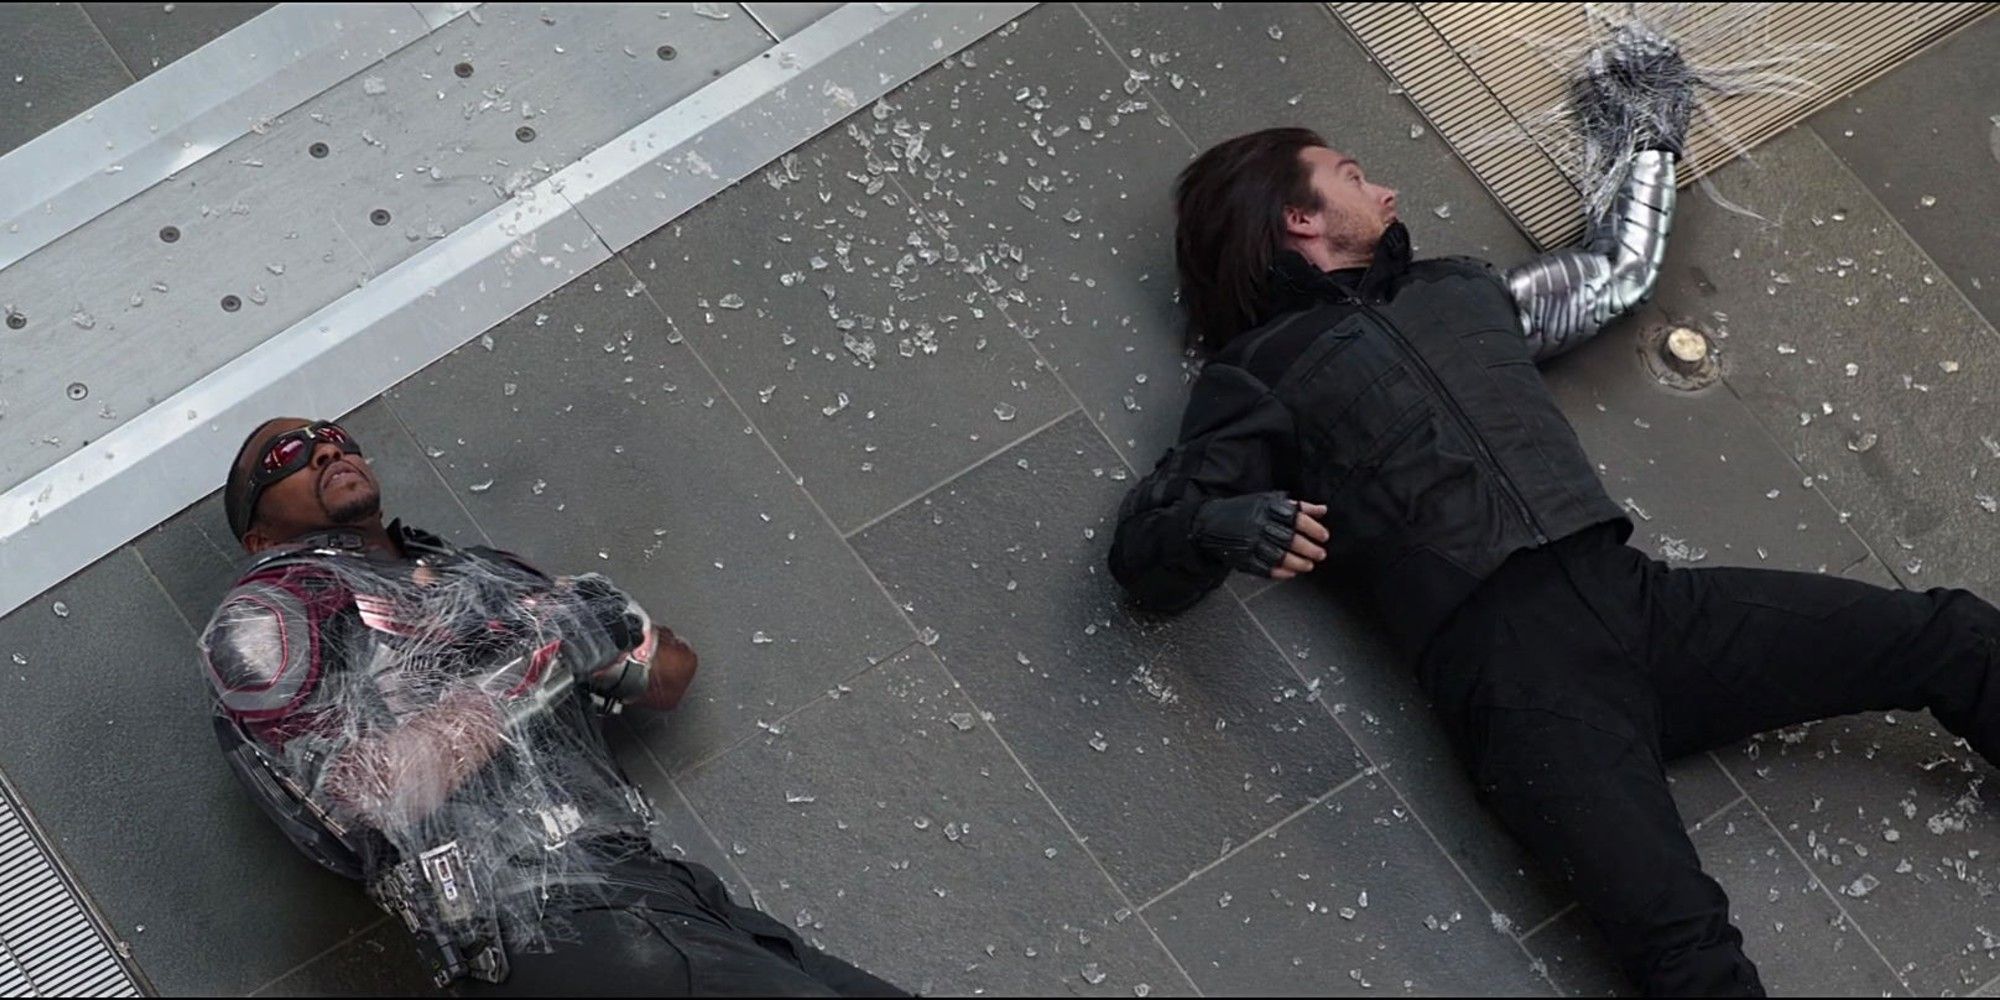 Vigilancia Desgastado menos Marvel's Falcon And The Winter Soldier Is A Direct Sequel To Civil War